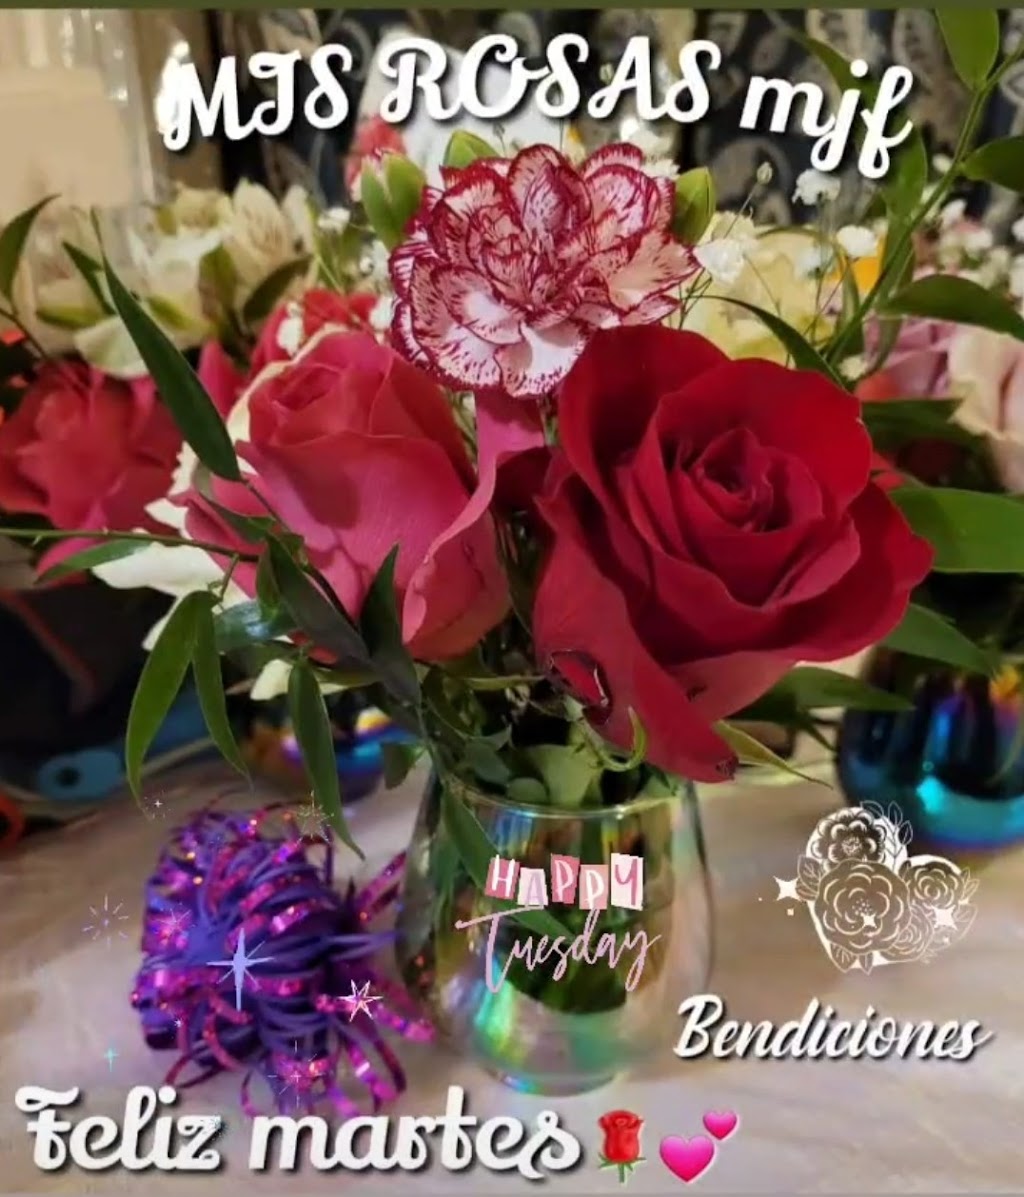 Mis Rosas M.J.F | 672 Luda St, Elgin, IL 60120 | Phone: (847) 754-9609